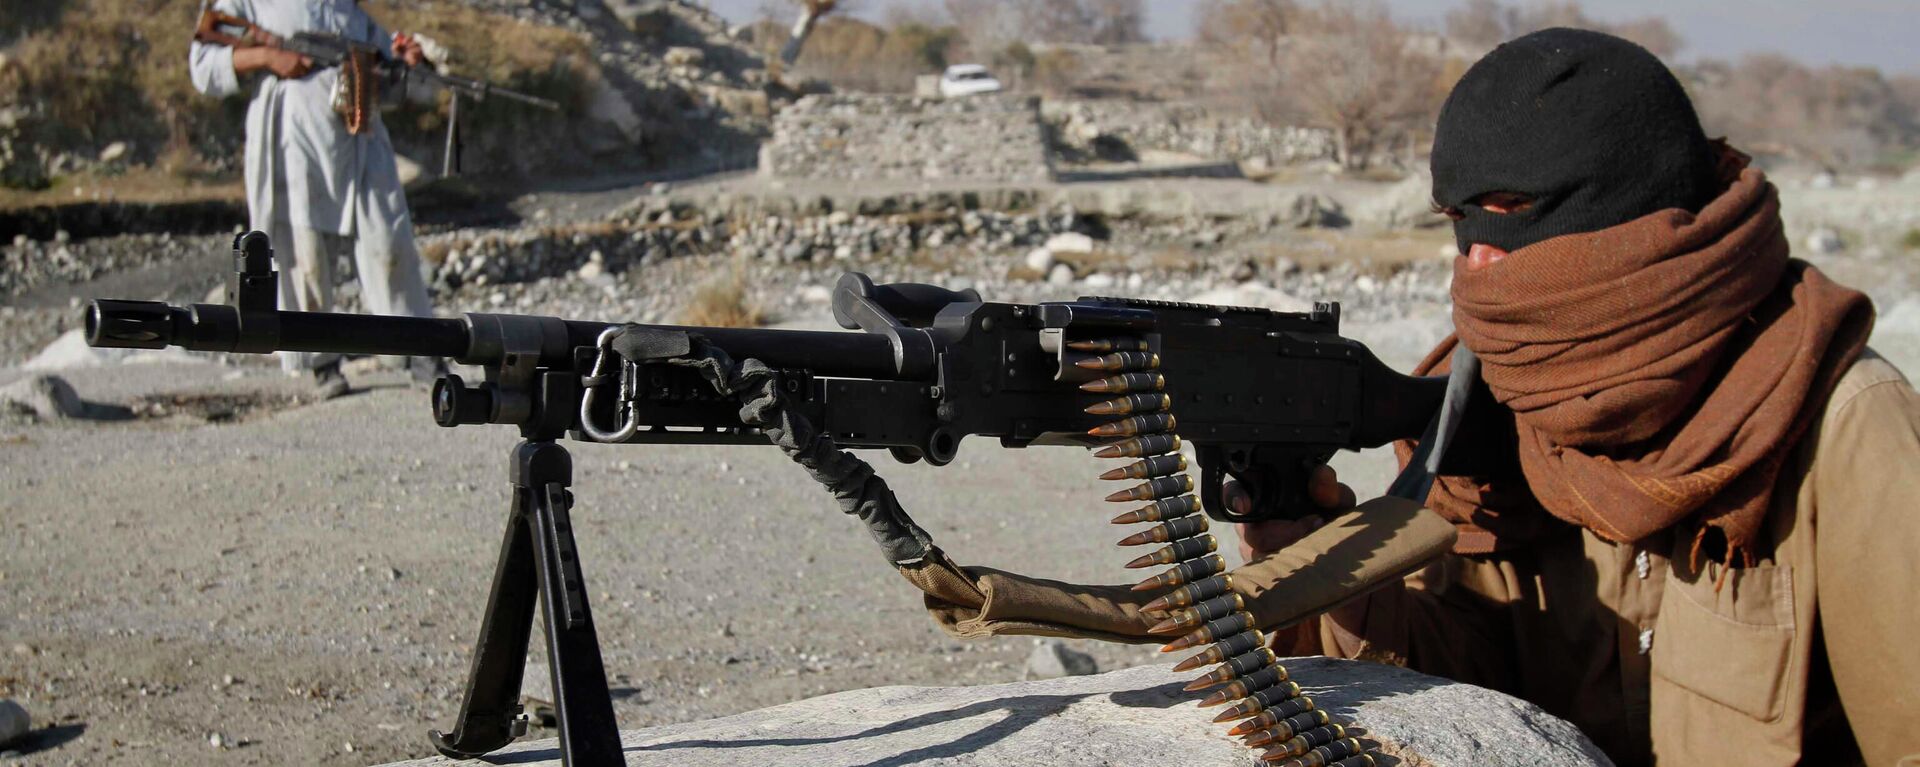 Боевики радикального движения Талибан в Афганистане - Sputnik Узбекистан, 1920, 04.07.2021